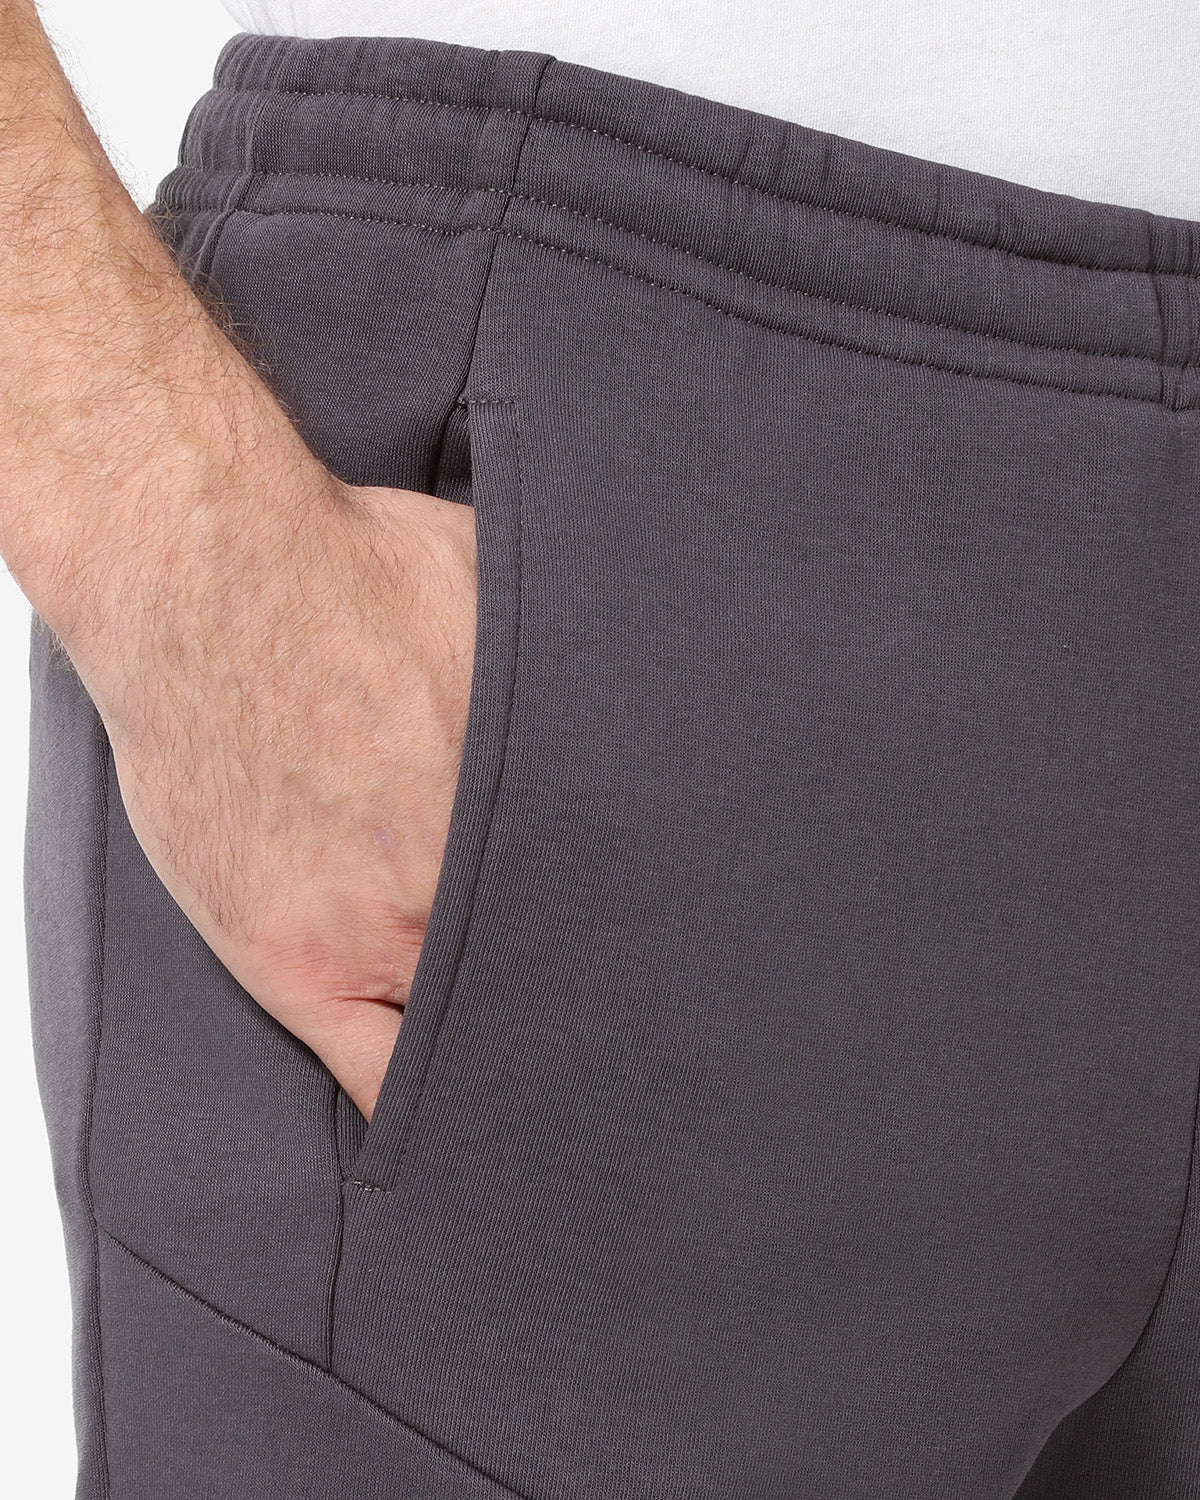 Tek-Fleece Pant: Australian Sportswear